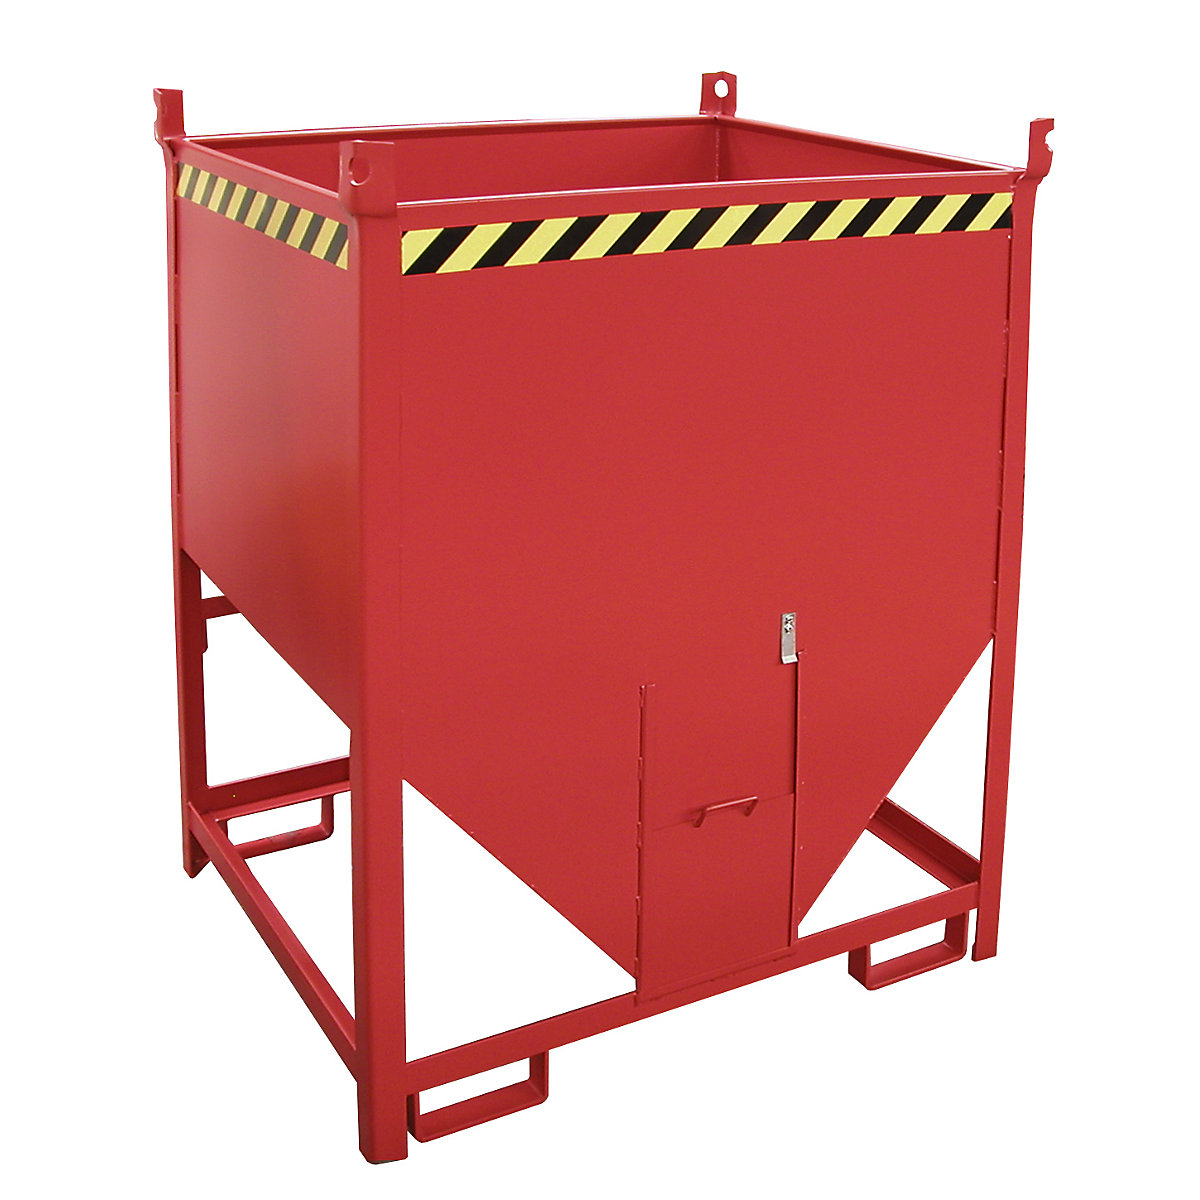 Prekucni zaboj – eurokraft pro, prostornina 1 m³, z drsno zaporo na čelni strani, ognjeno rdeče barve RAL 3000-5